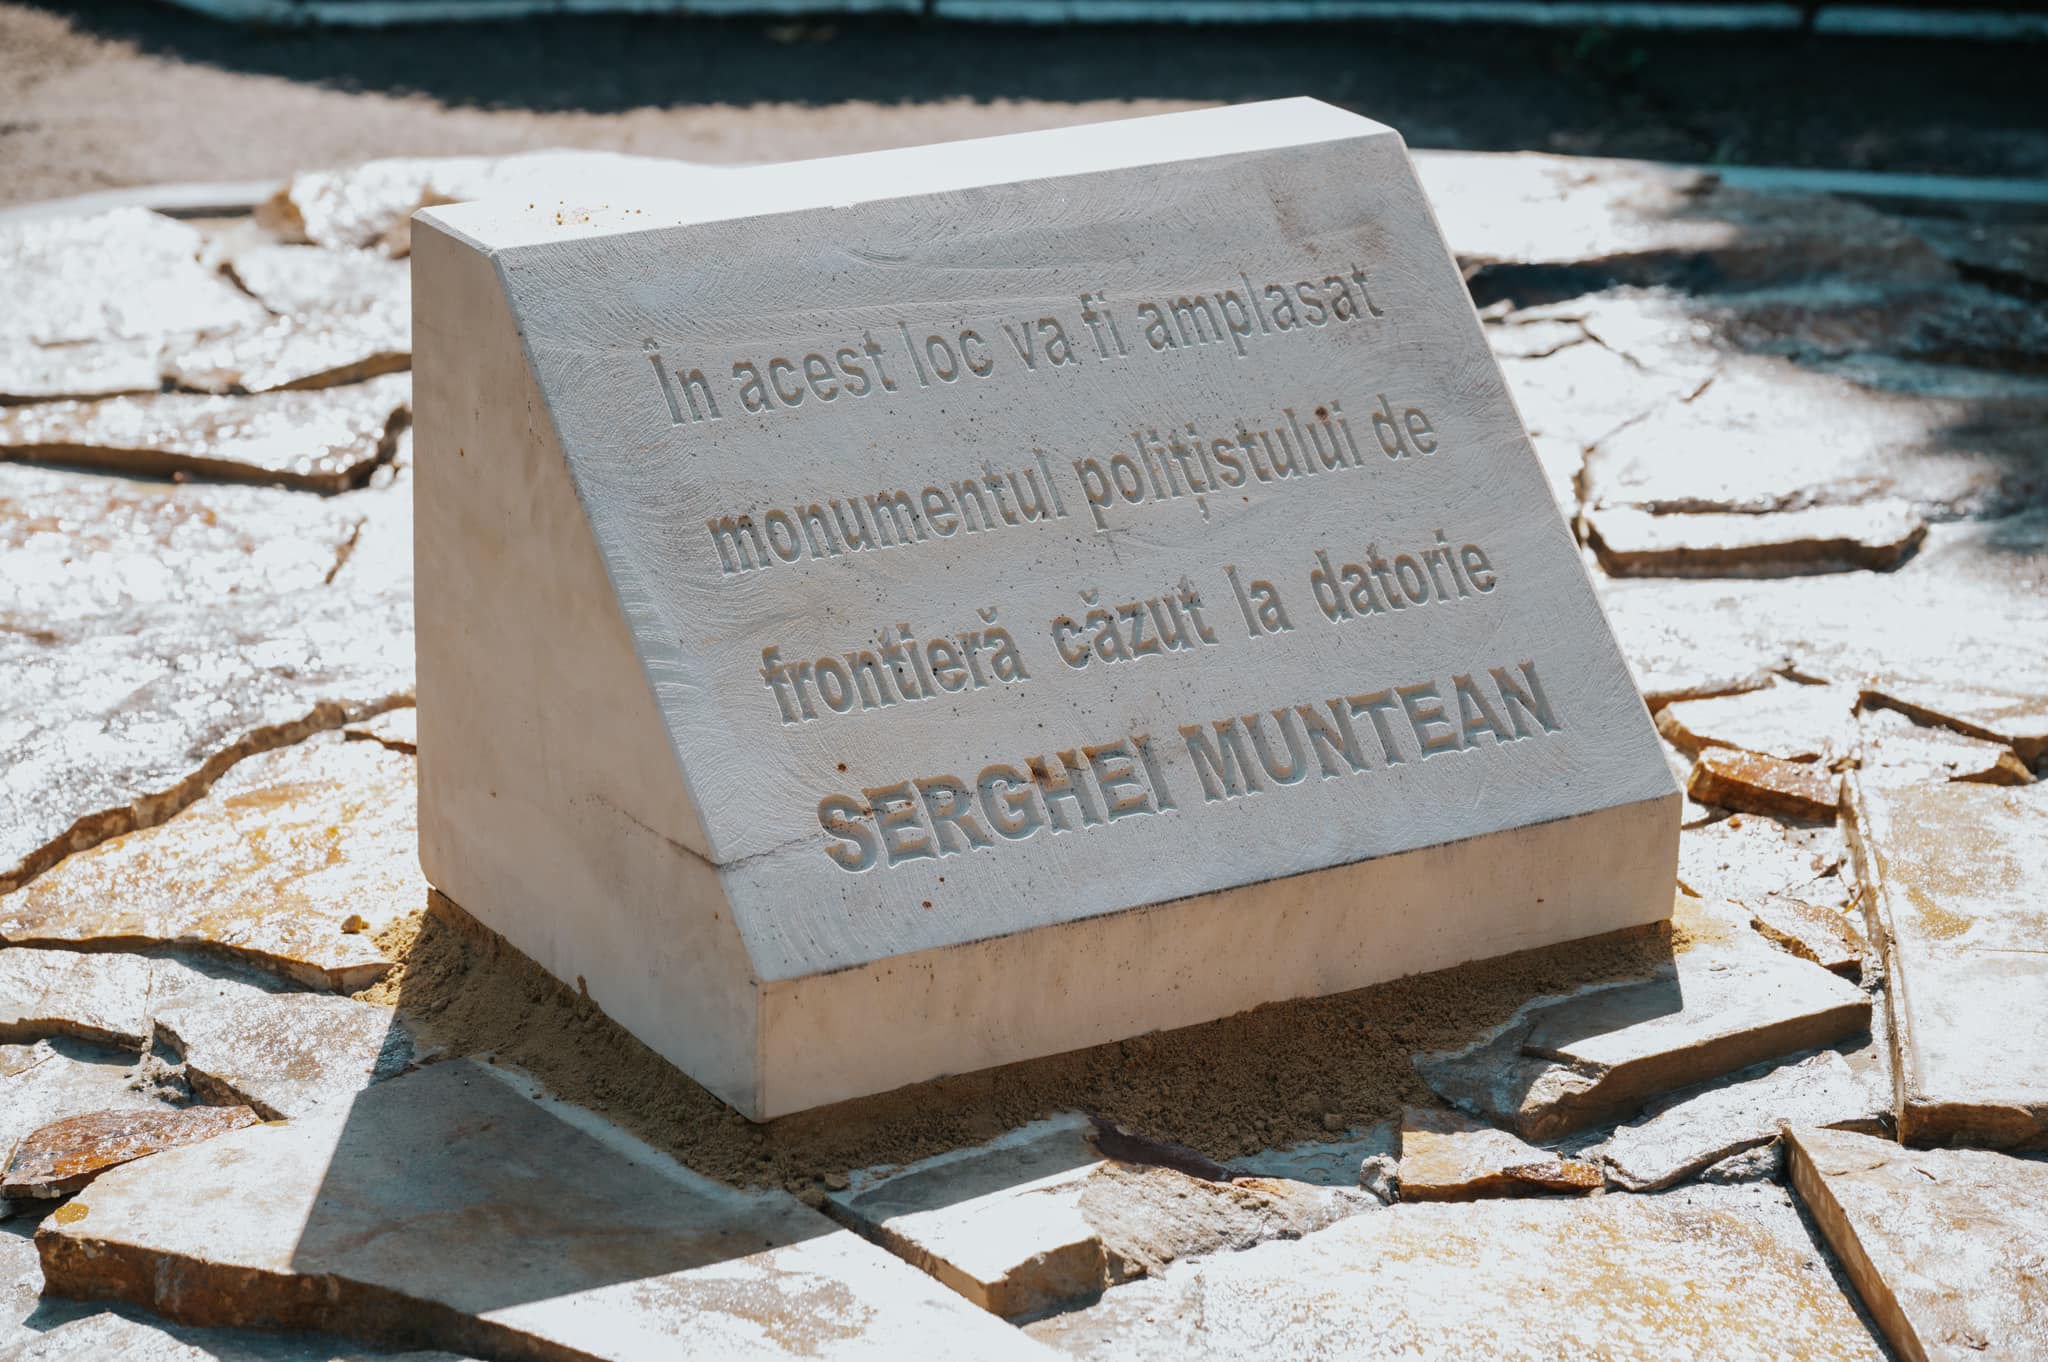 FOTO „Eroii nu mor niciodată”: Poliția de Frontieră va ridica un monument în memoria lui Serghei Muntean, ucis pe Aeroport